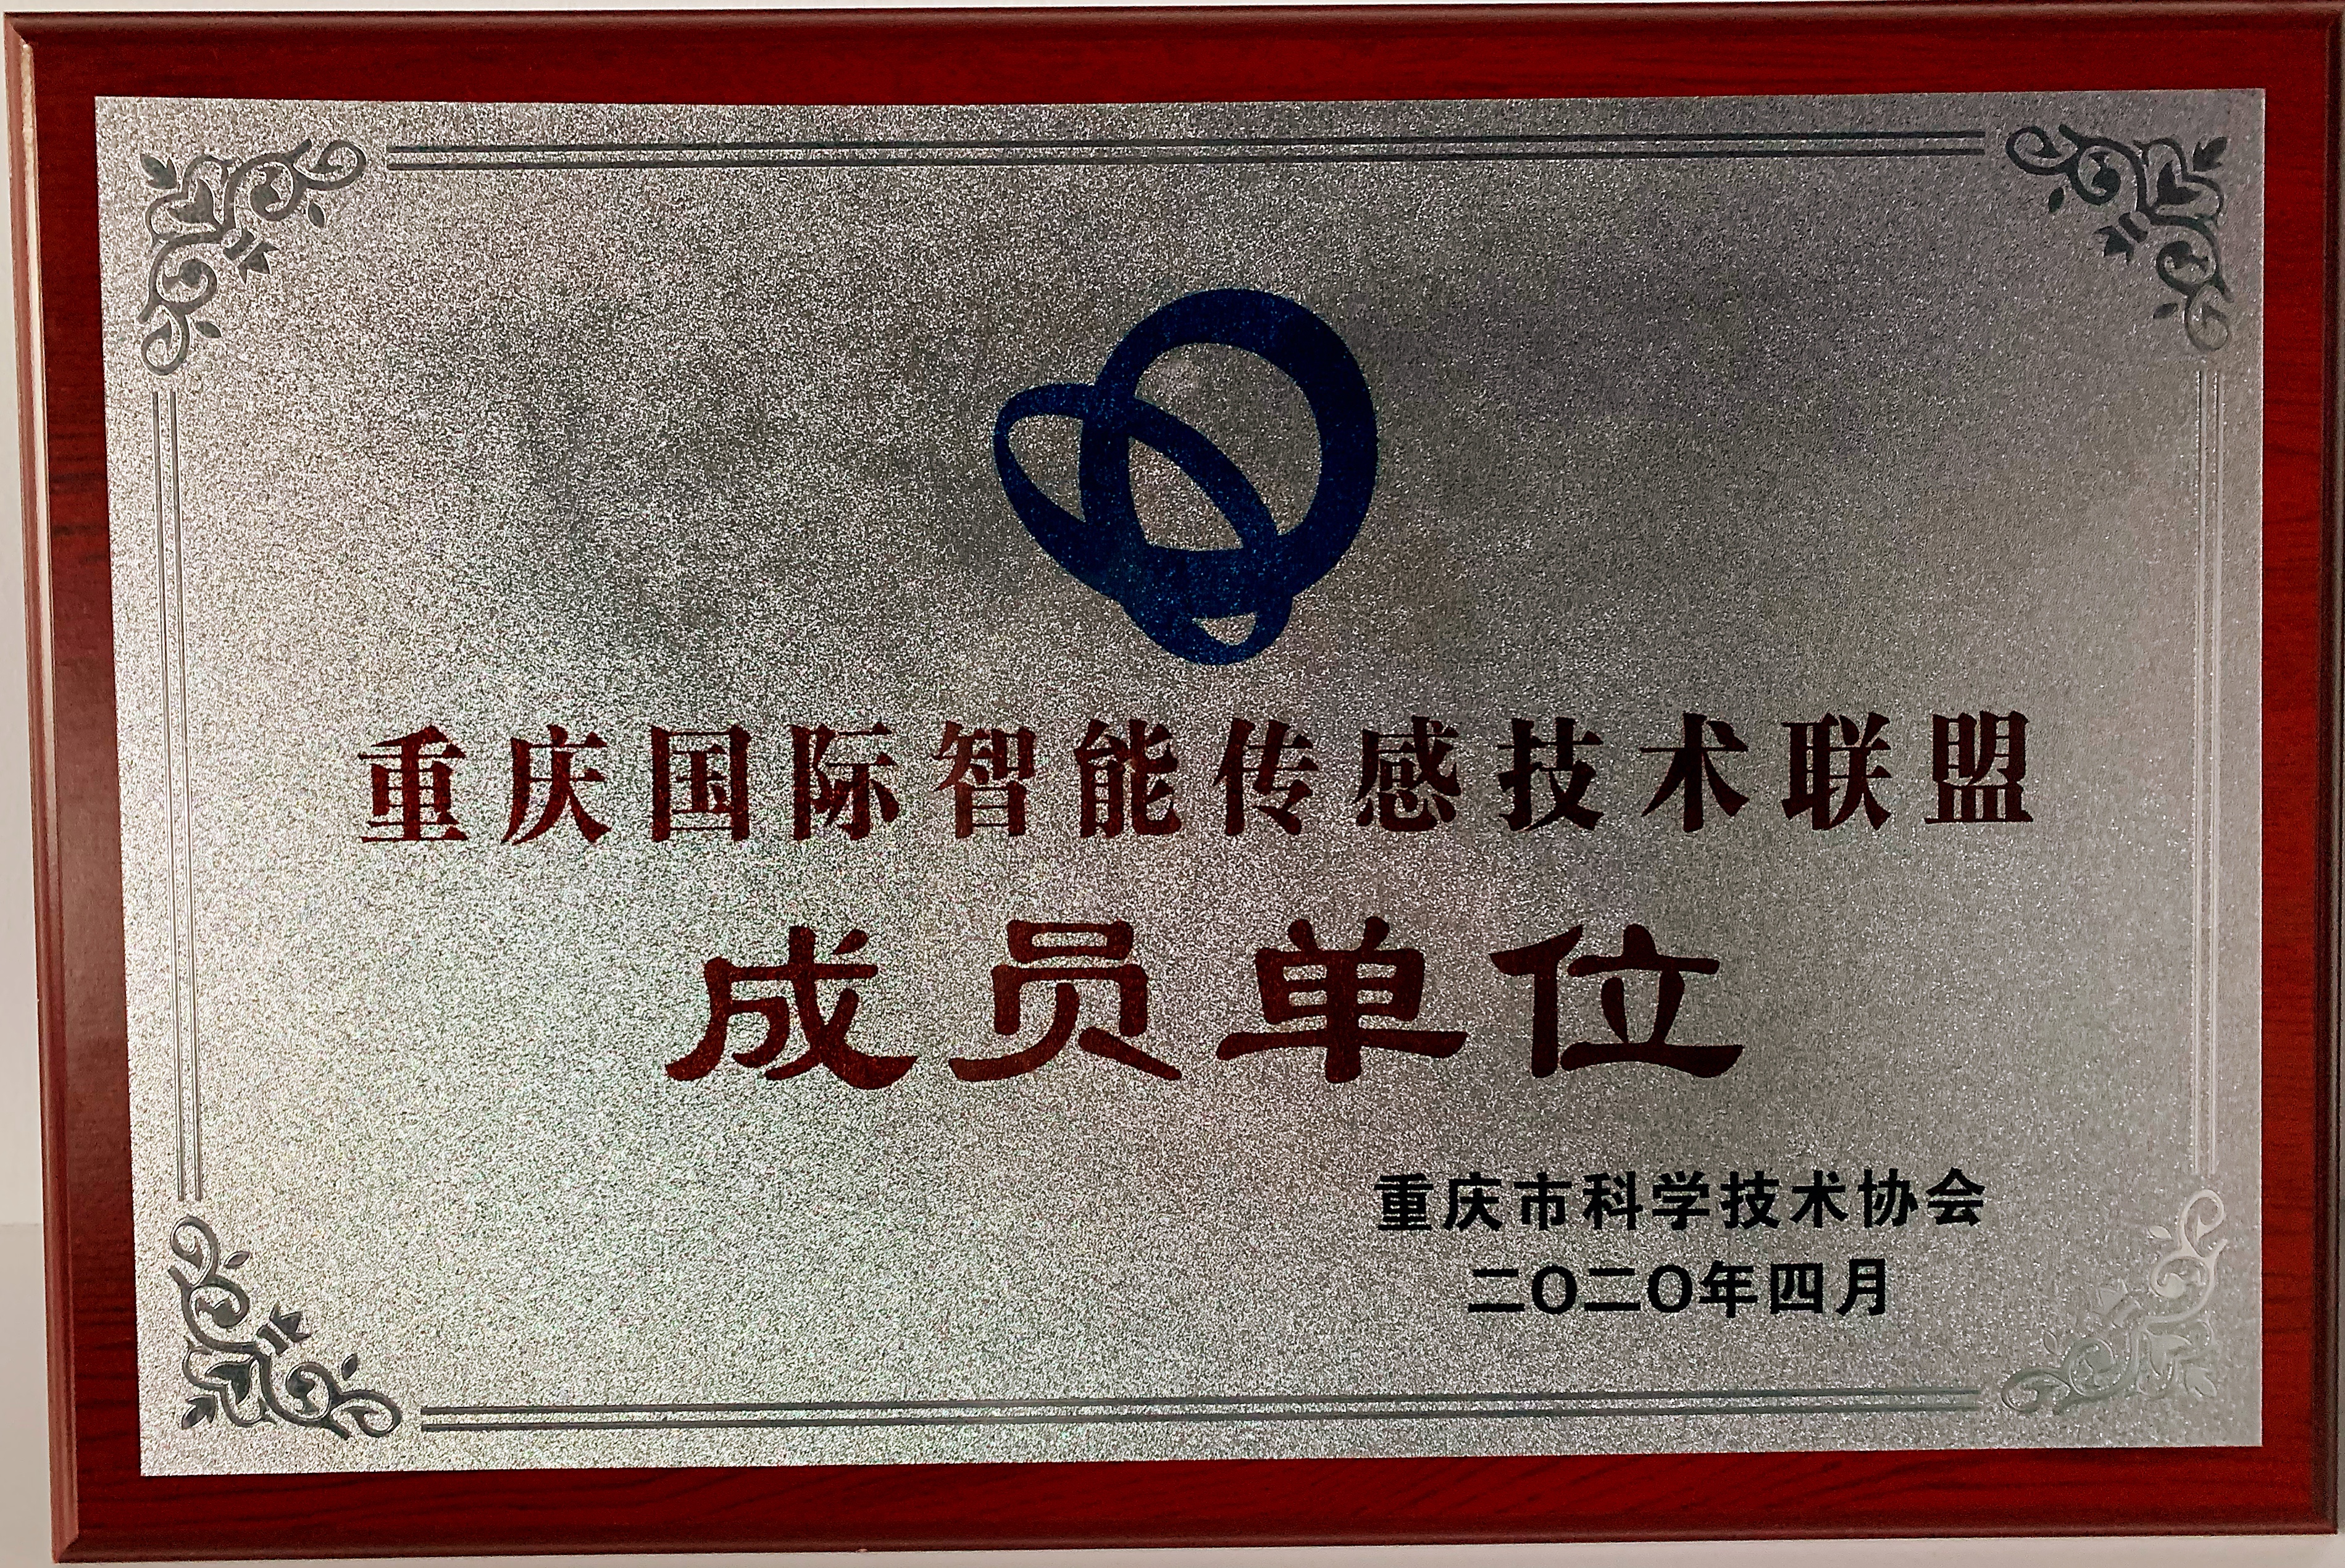 重庆国际智能传感技术联盟理事单位